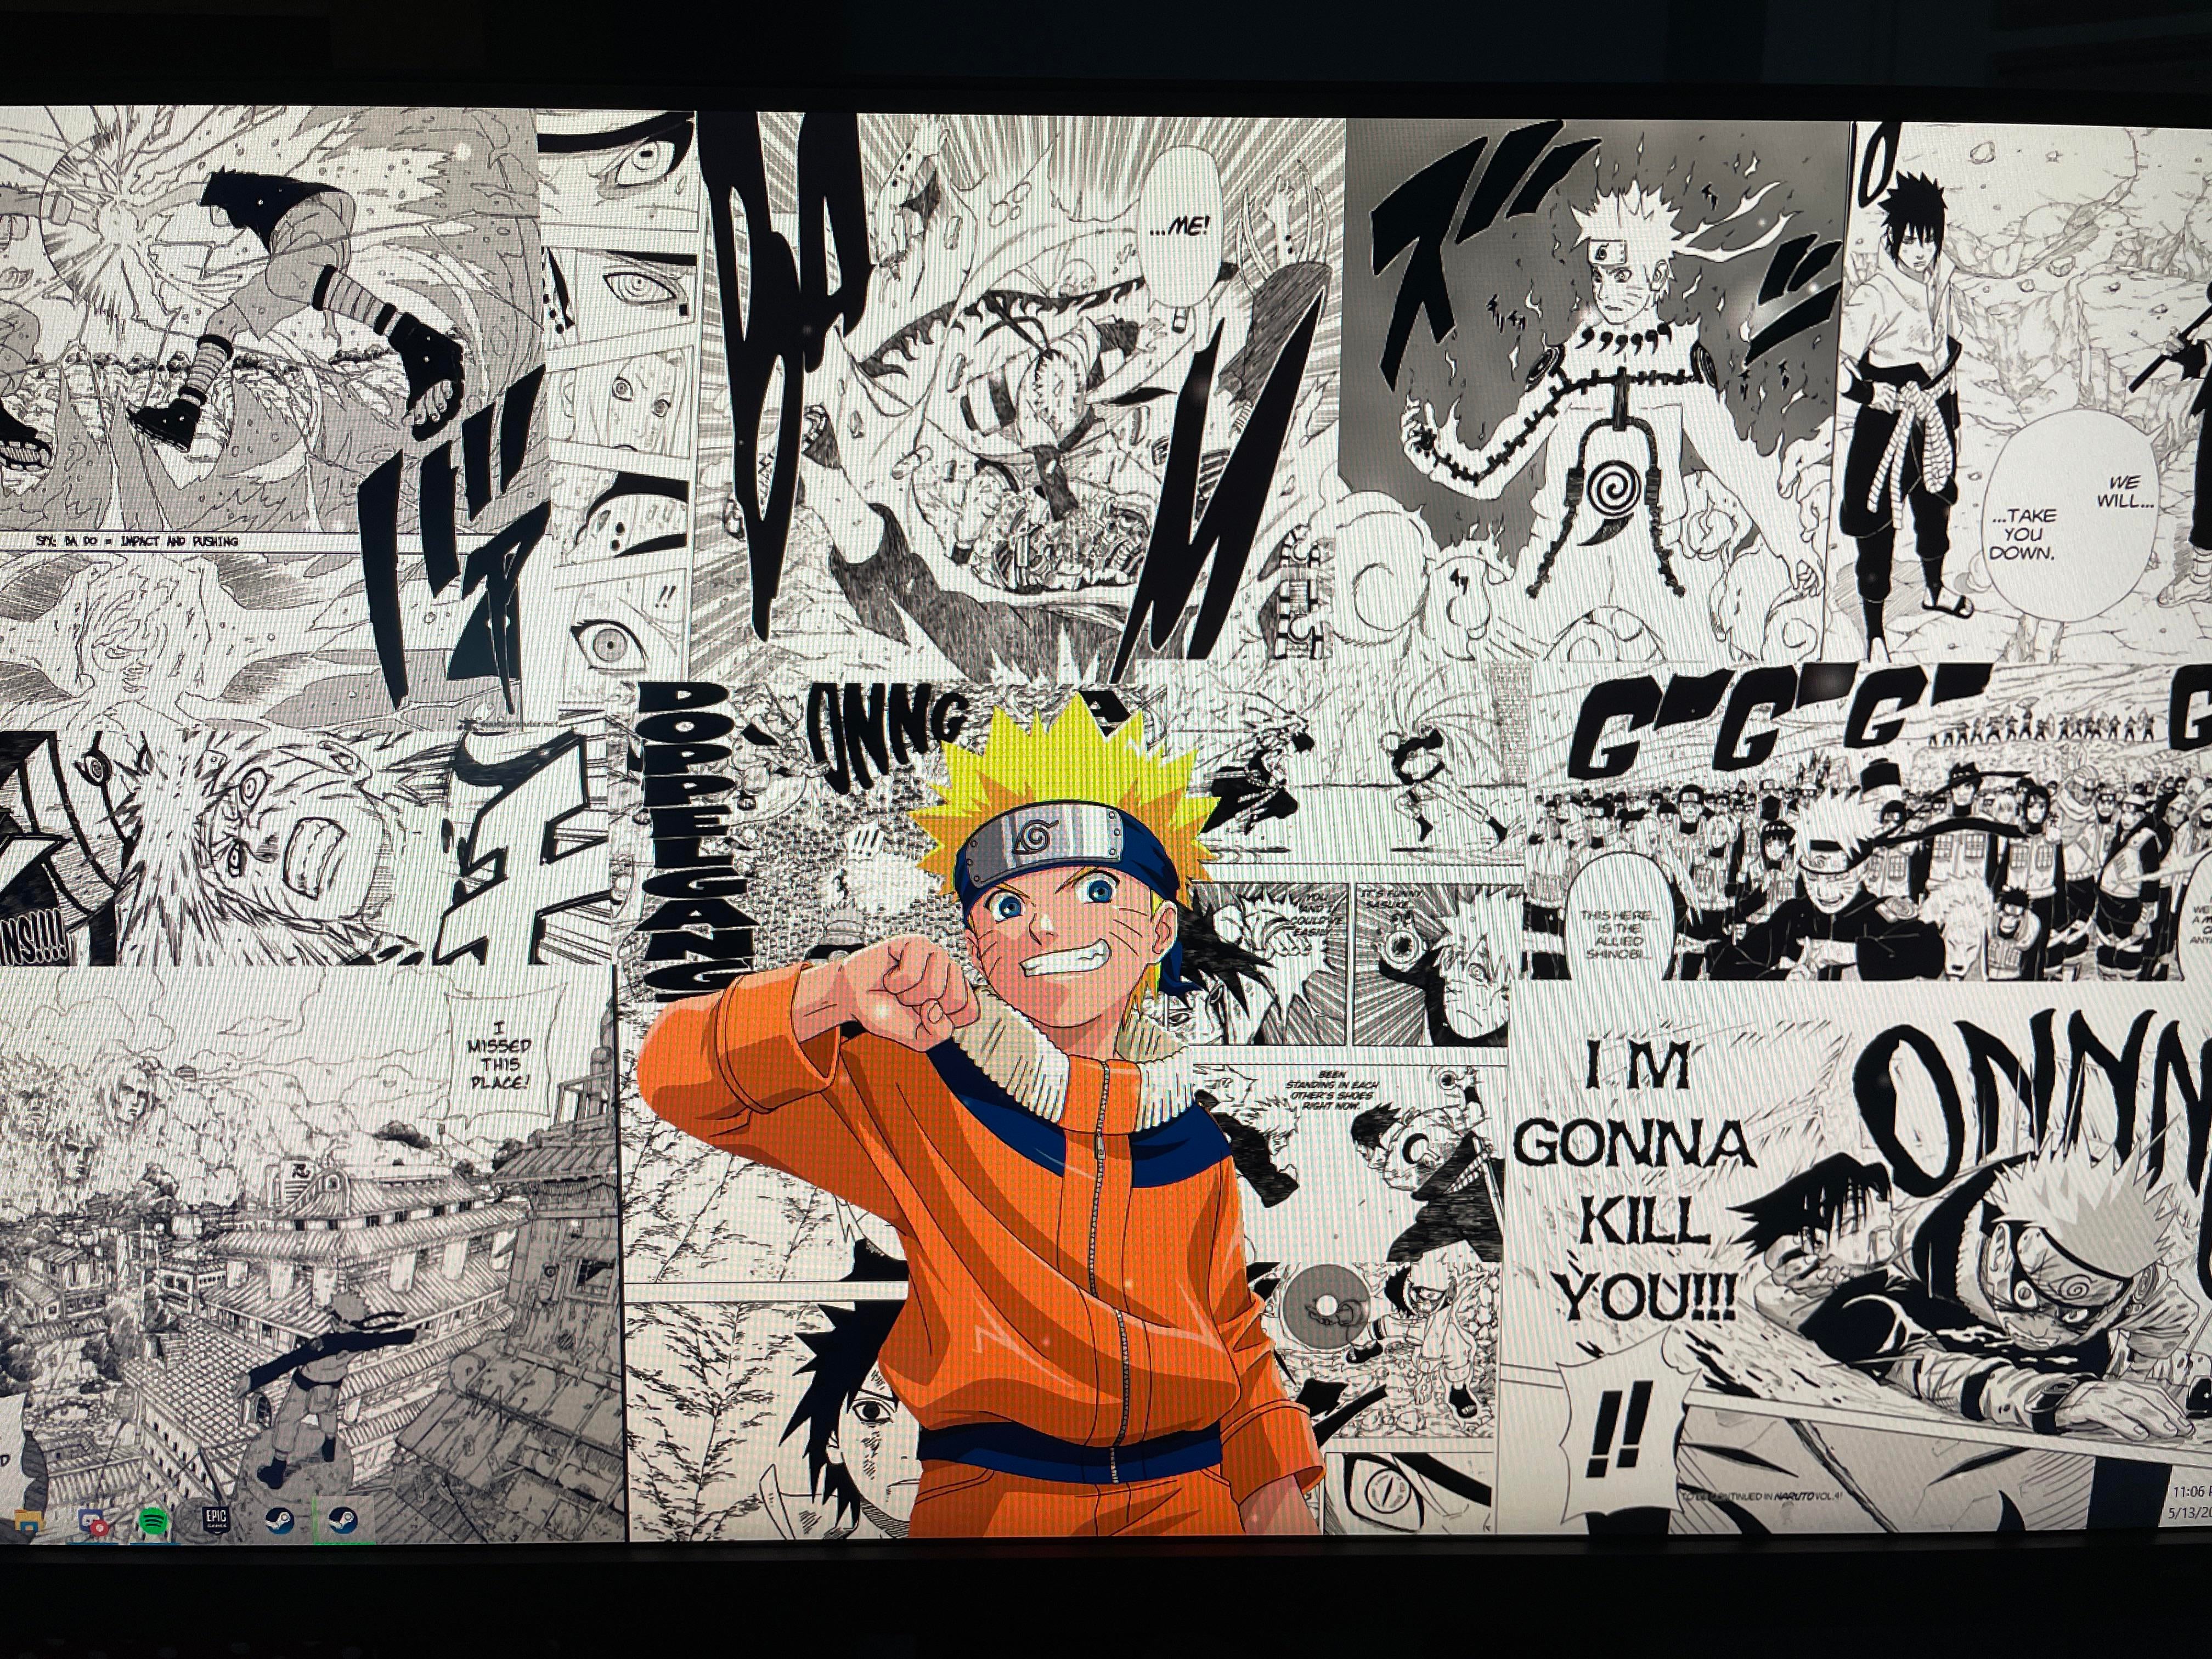 Naruto Manga Panels Wallpapers - Wallpaper Cave